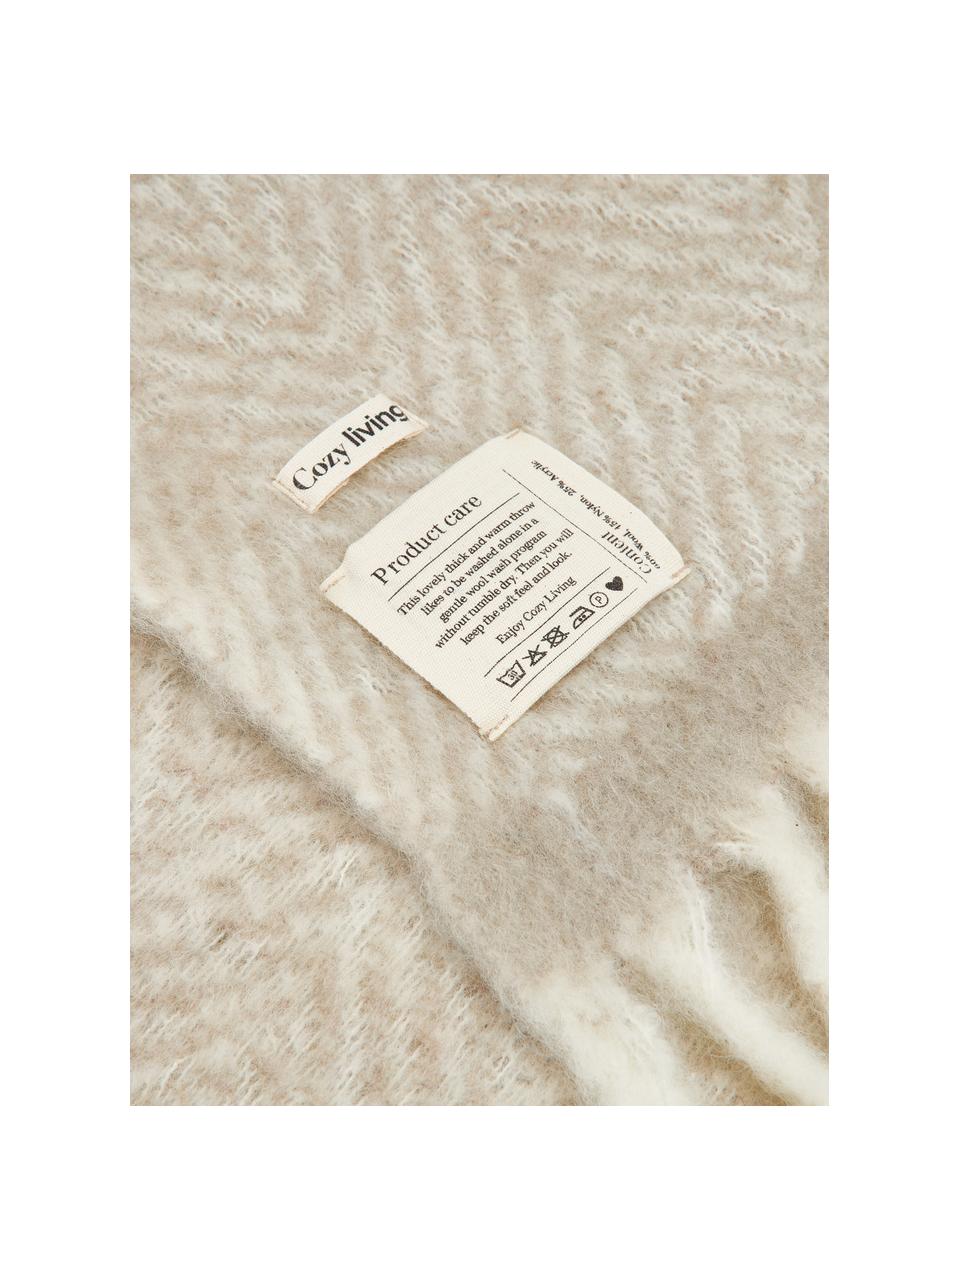 Woll-Decke Mathea mit Fransen in Beige, 60 % Wolle, 25 % Acryl, 15 % Nylon, Beige, Cremefarben, L 170 x B 130 cm